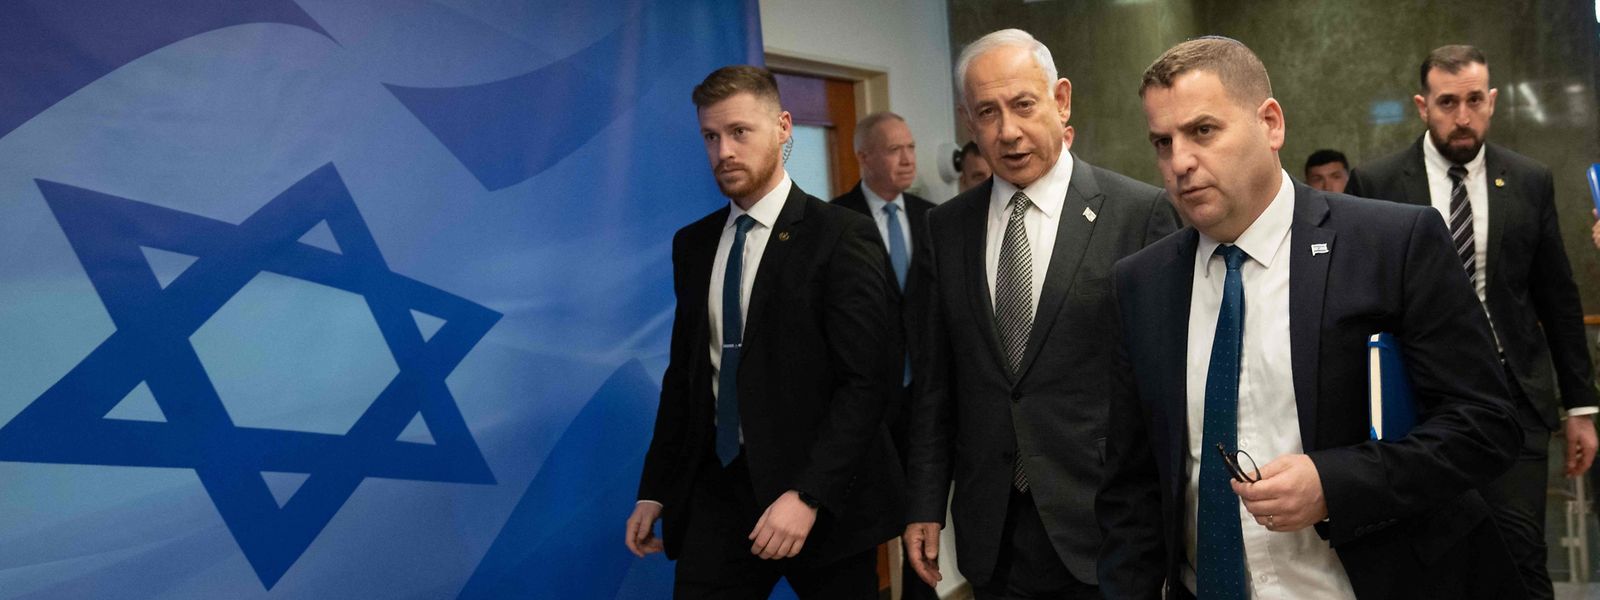 Die Regierung von Benjamin Netanjahu (Mitte) ist noch nicht lange im Amt, steht aber schon massiv unter Druck.